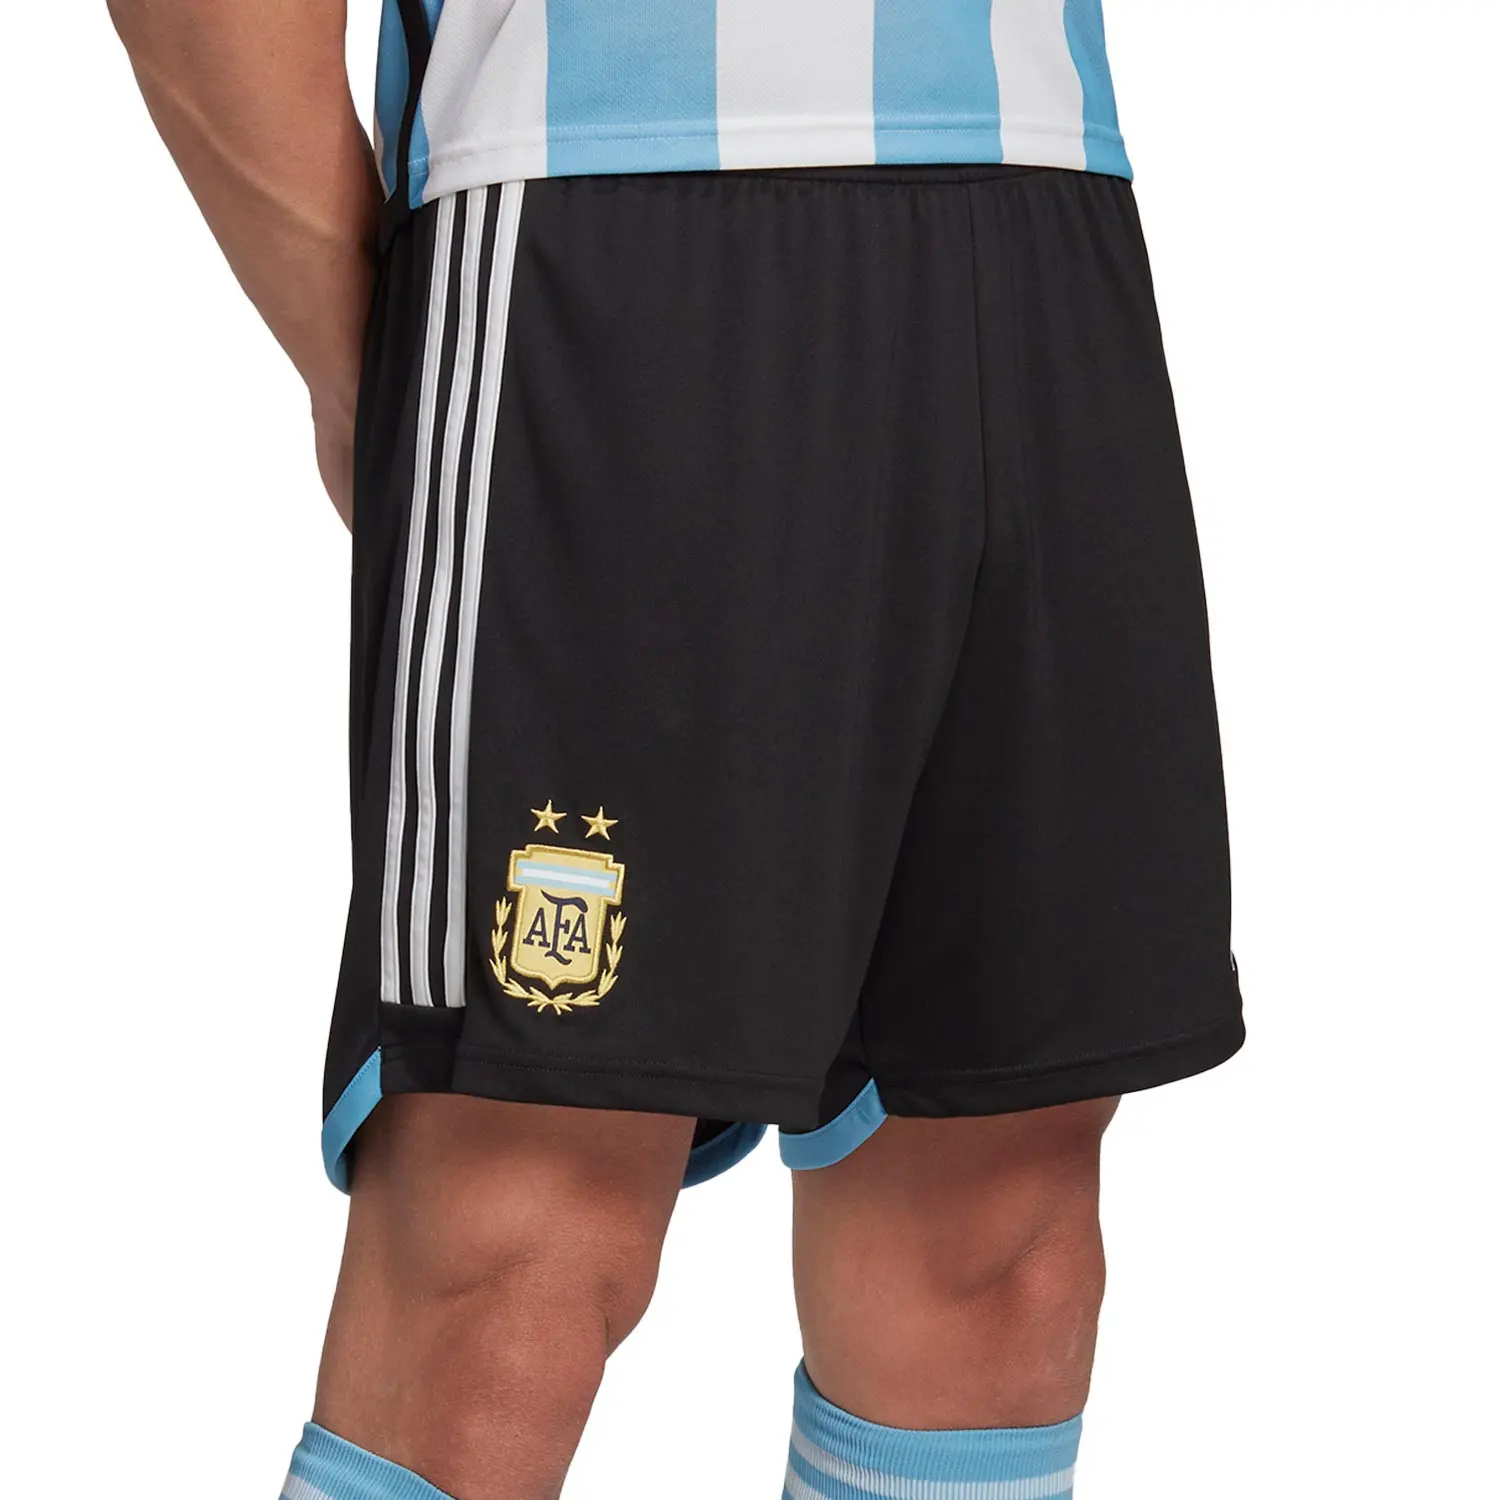 pantalon corto de la seleccion argentina - Quién es el número 23 de la selección argentina